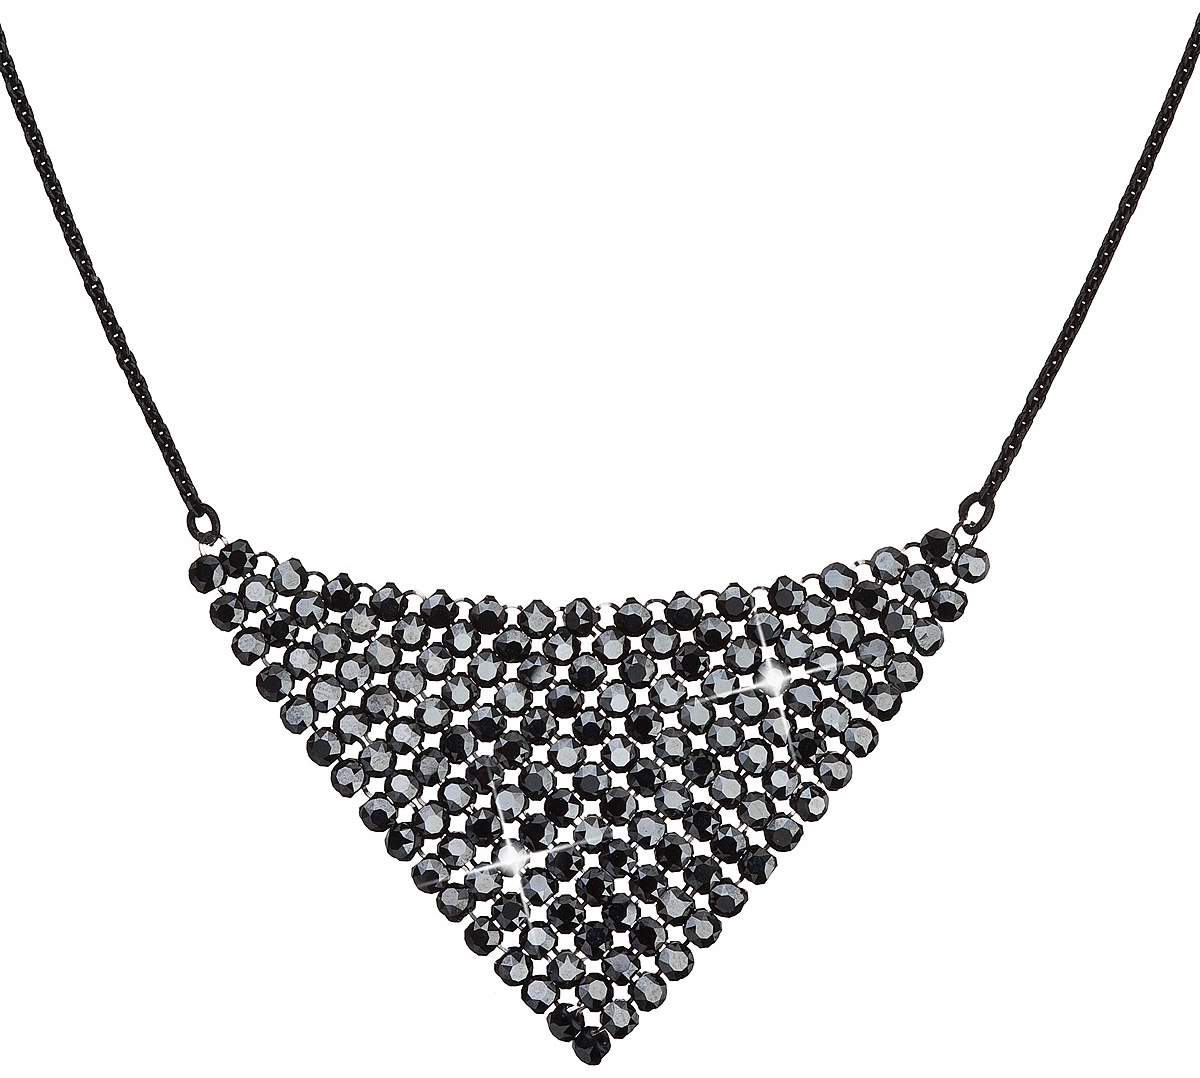 Strieborný náhrdelník s krištáľmi Swarovski čierny 32019.5